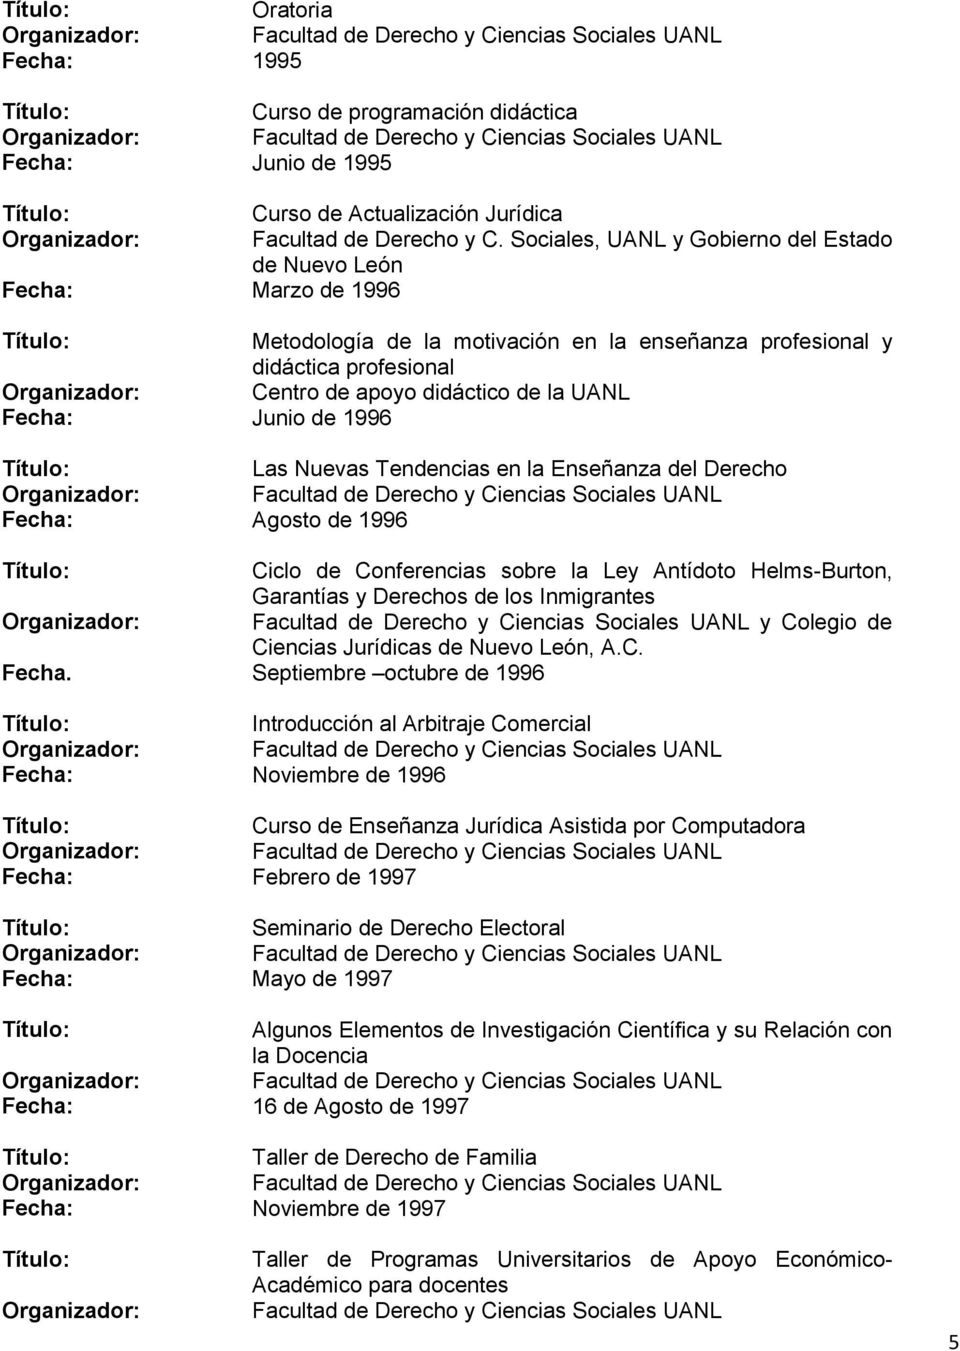 Sociales, UANL y Gobierno del Estado de Nuevo León Fecha: Marzo de 1996 Metodología de la motivación en la enseñanza profesional y didáctica profesional Centro de apoyo didáctico de la UANL Fecha: